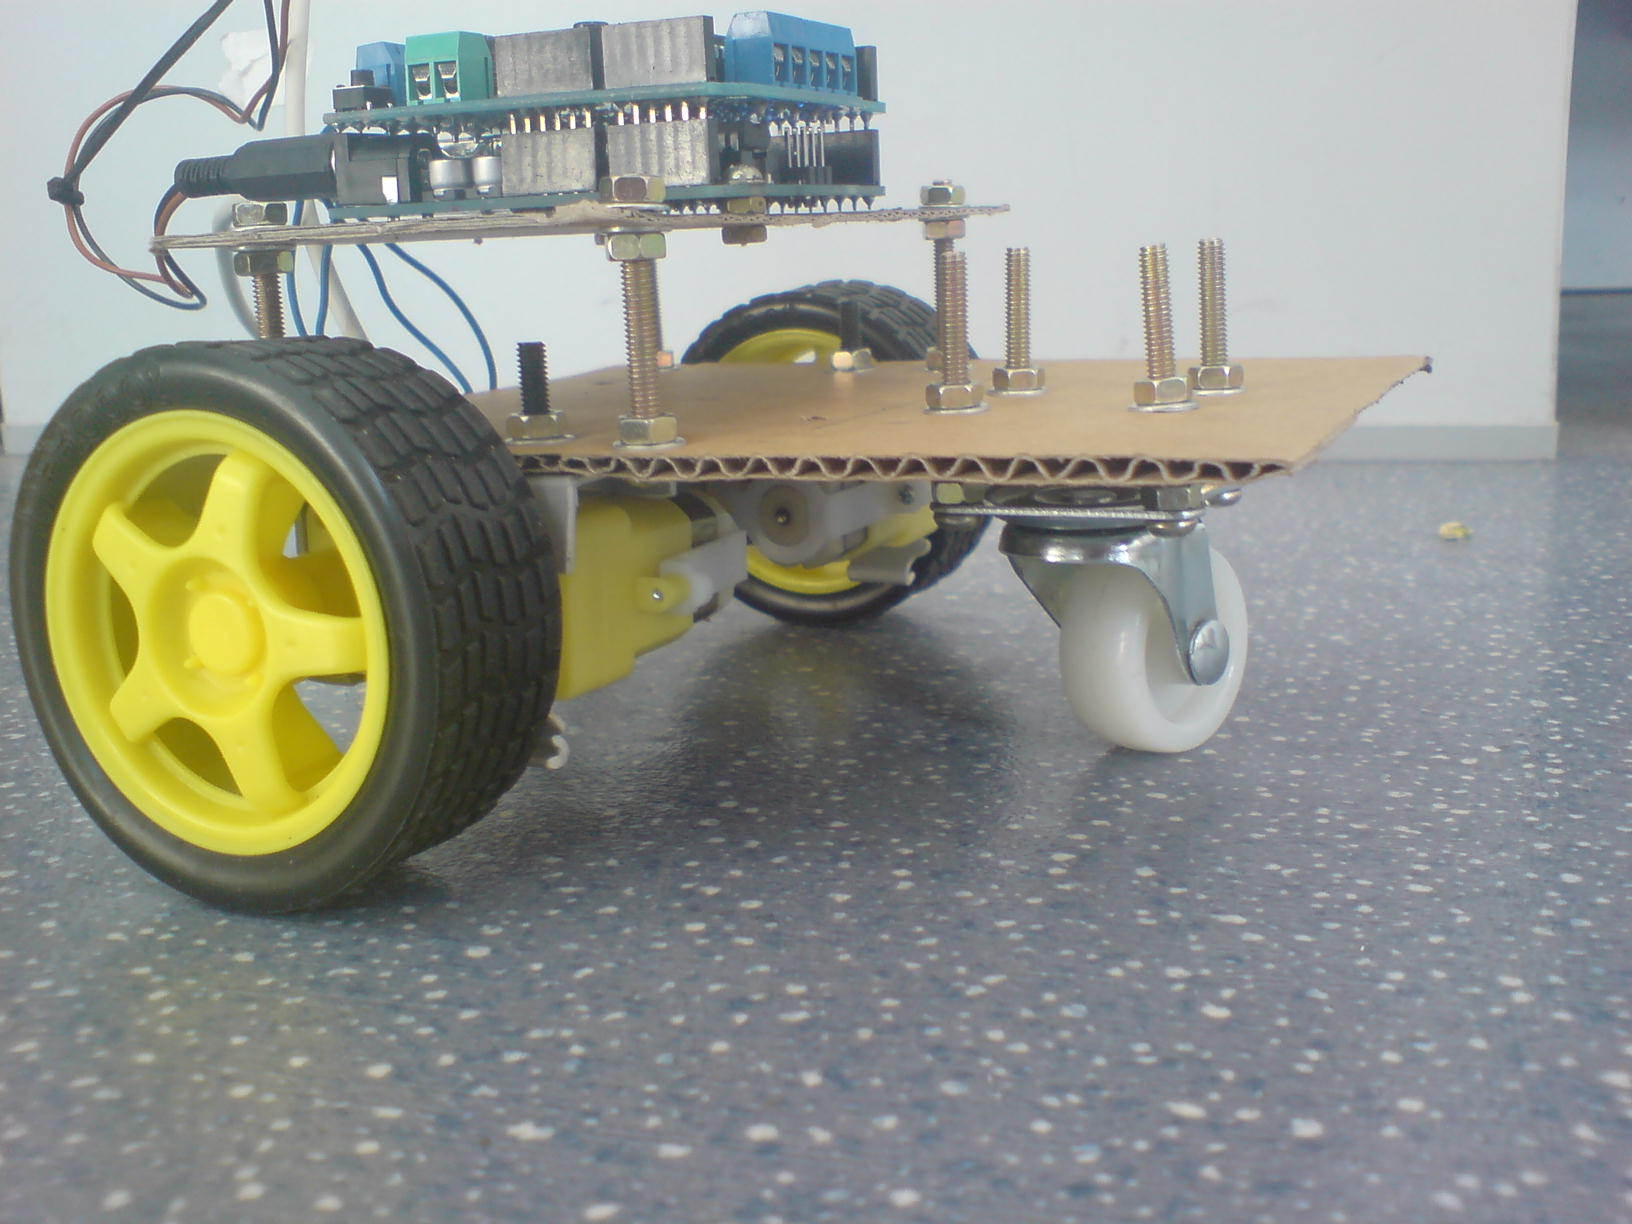 科技小制作橡皮筋动力车旋风实验车青少年手工课竞技比赛推荐器材-阿里巴巴